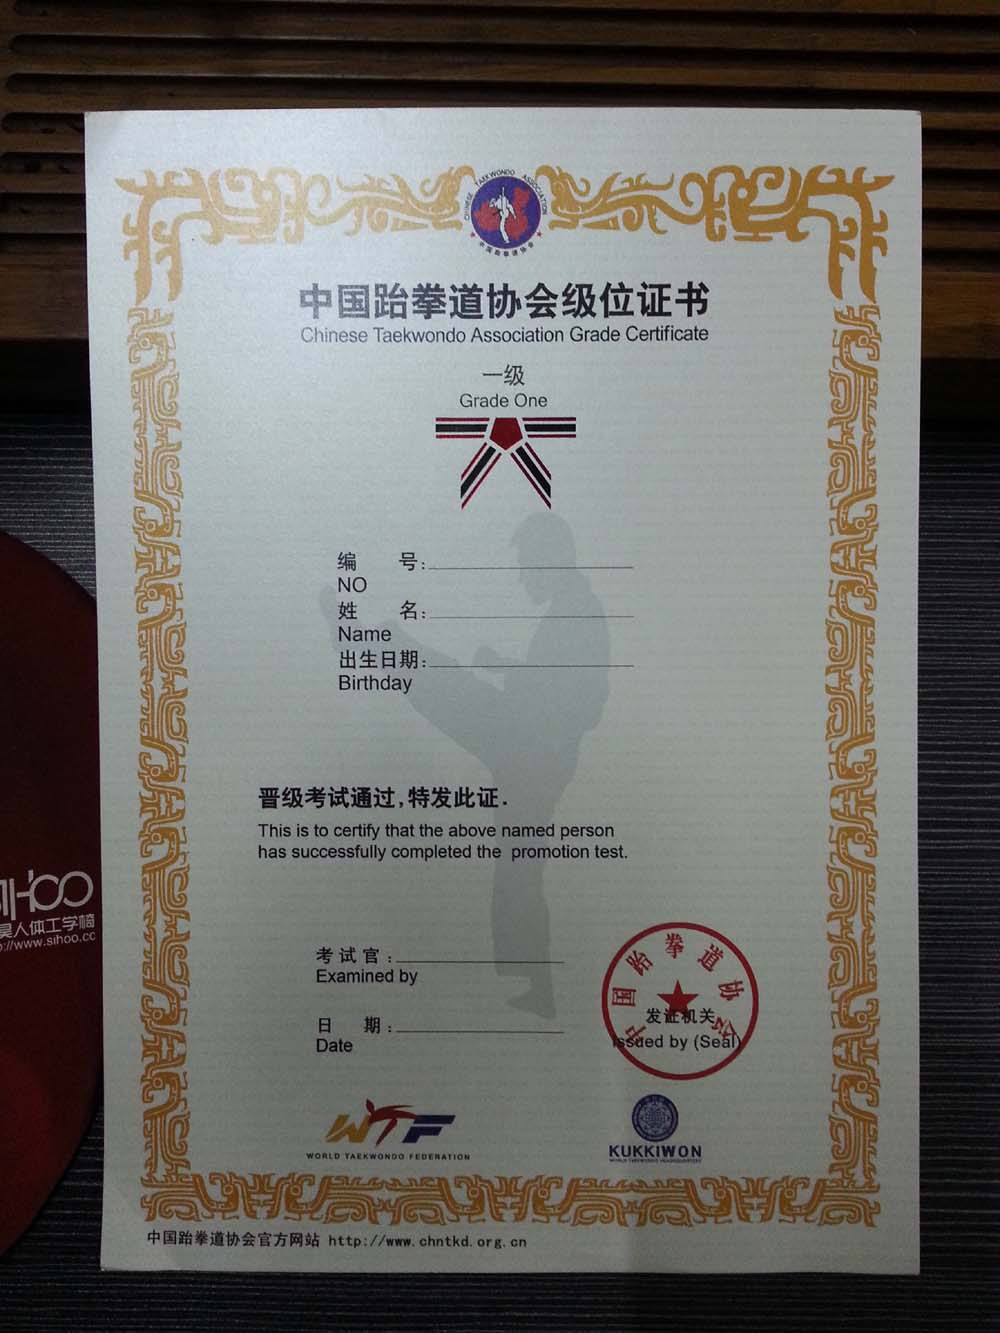 厂家直销 新版跆拳道证书 级位证书 中跆协证书